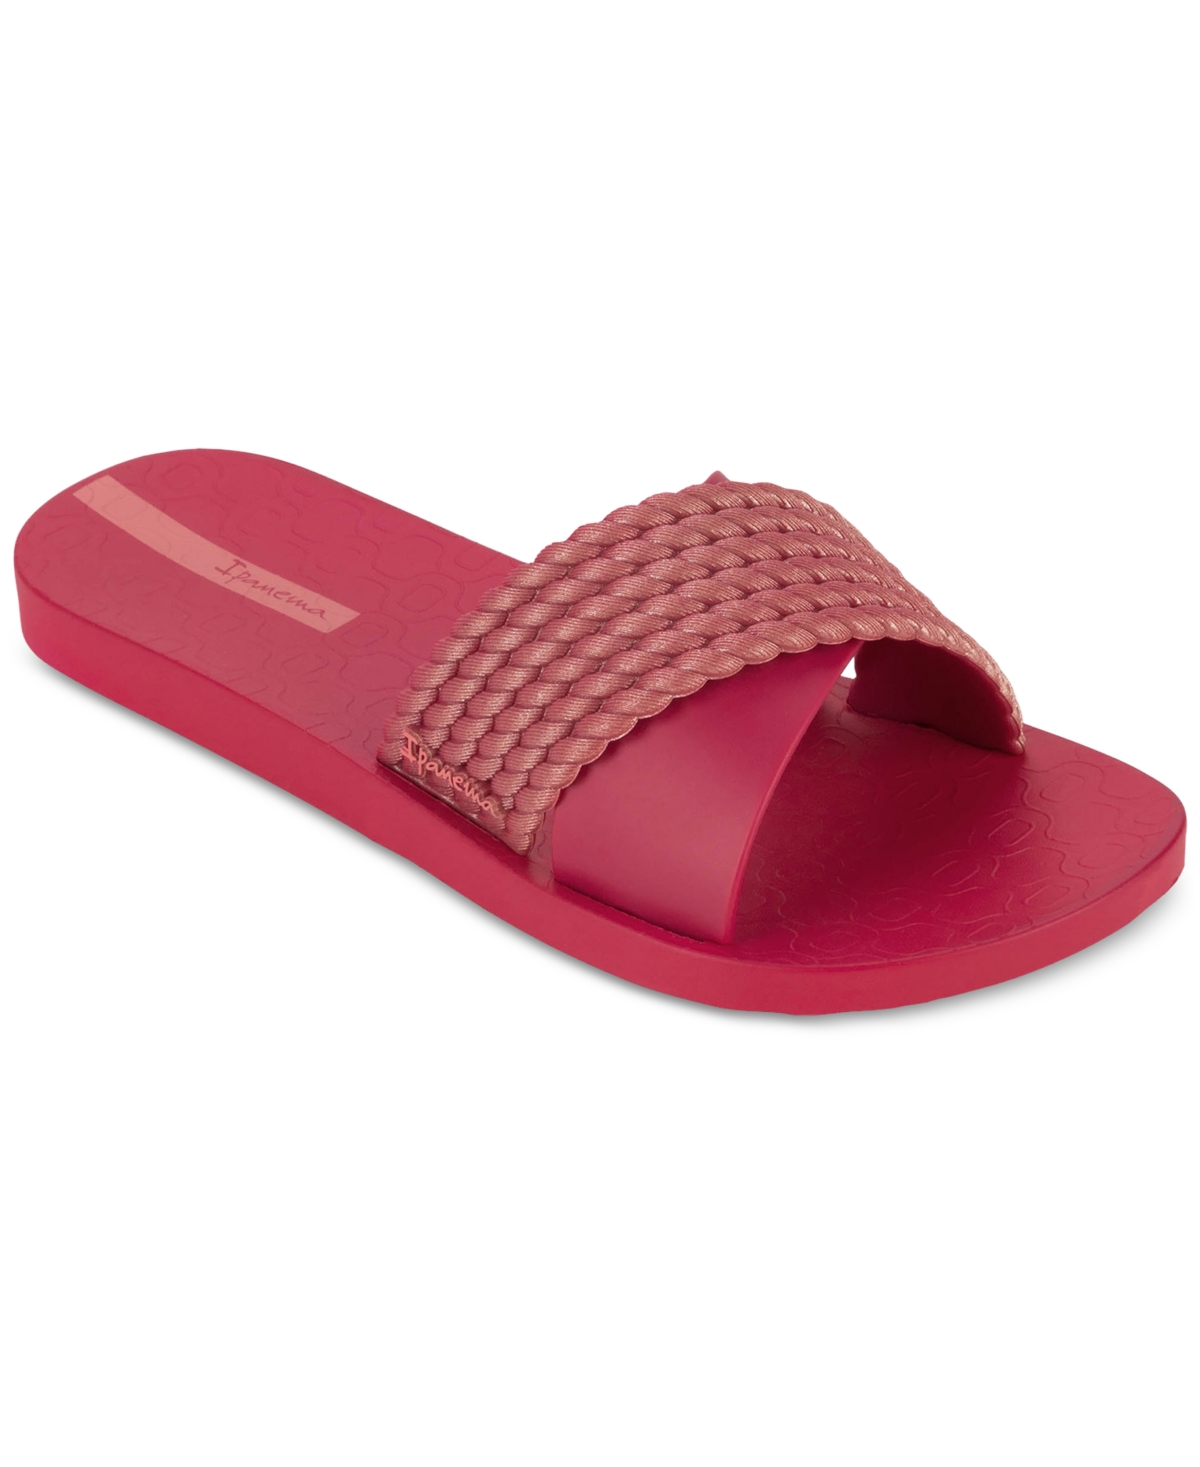 Shop Ipanema Women's Street Ii Water-resistant Slide Sandals In Red,red